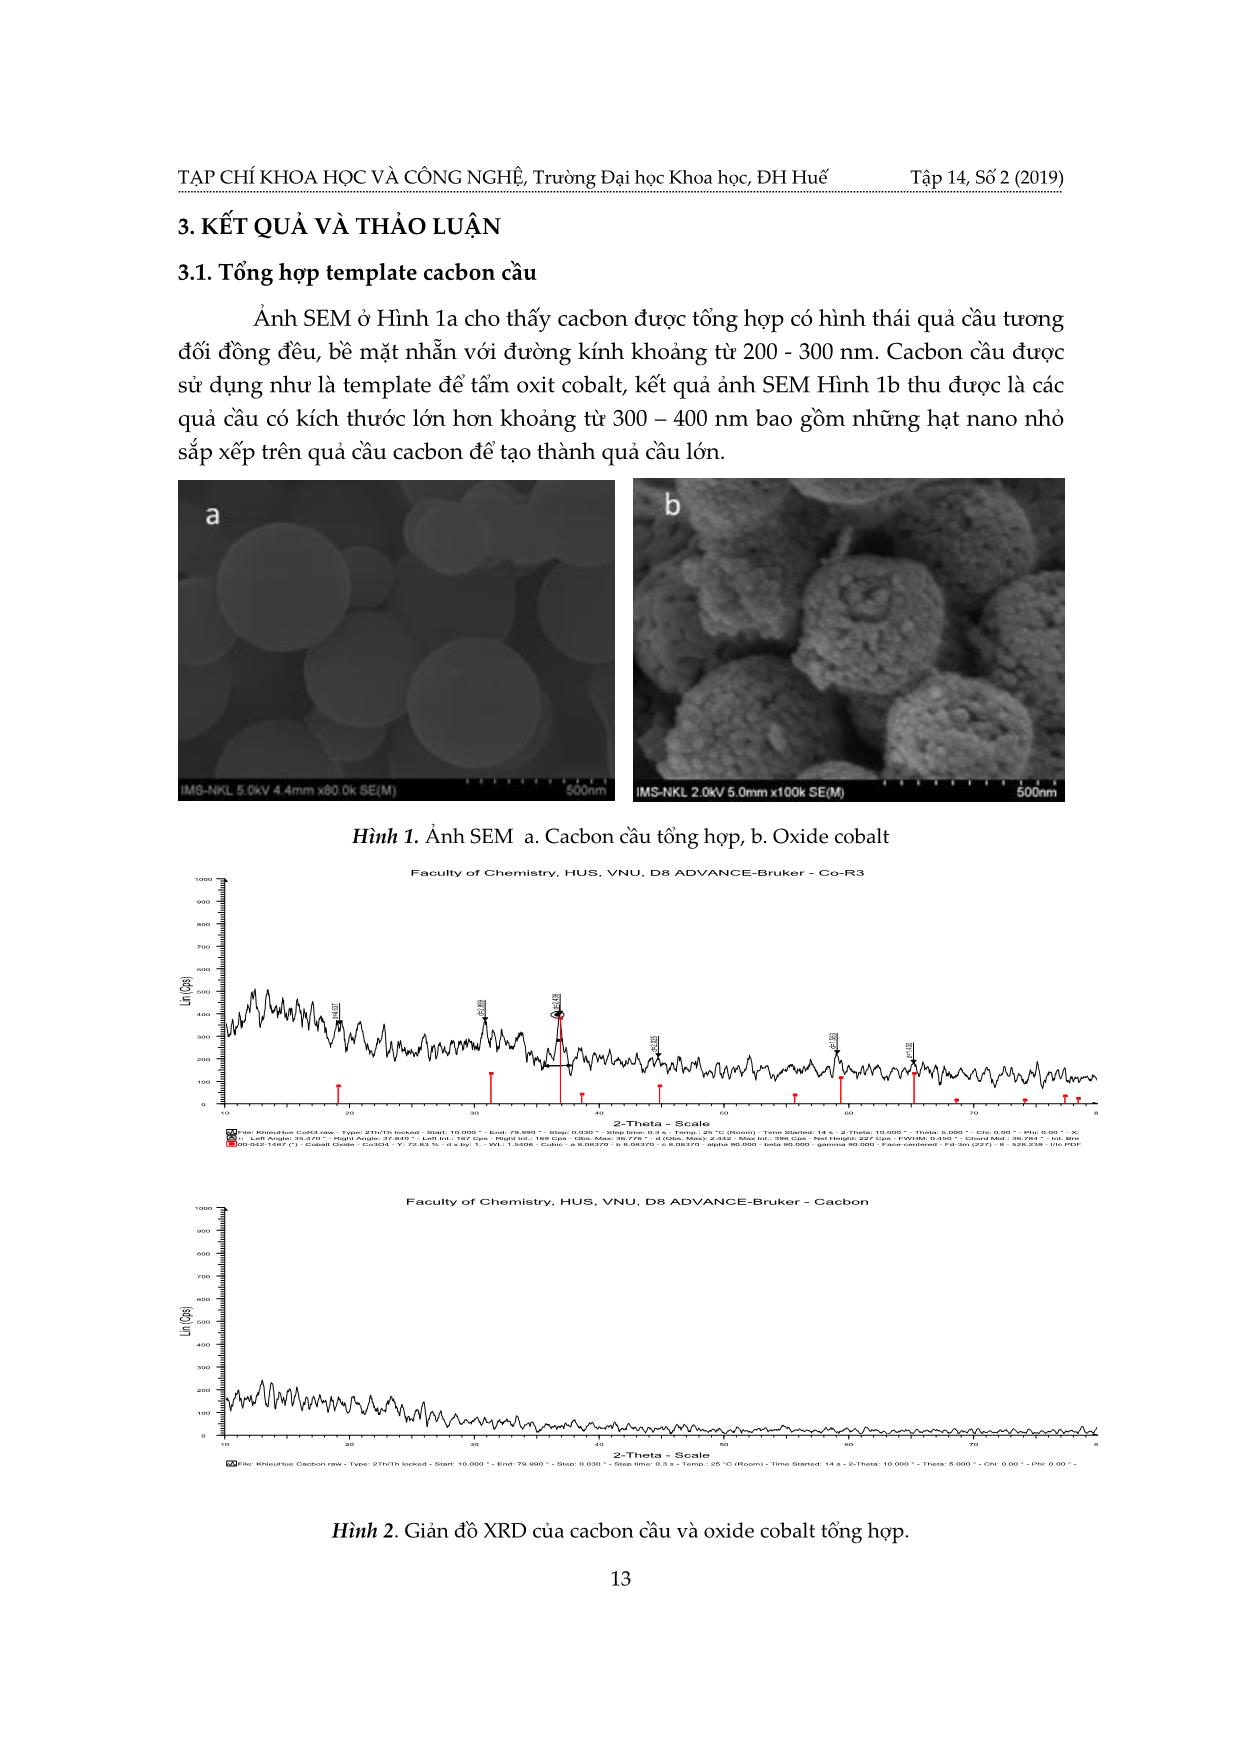 Tính nhạy khí H₂S của cảm biến nano oxit coban hình thái cầu từ template cacbon cầu trang 3